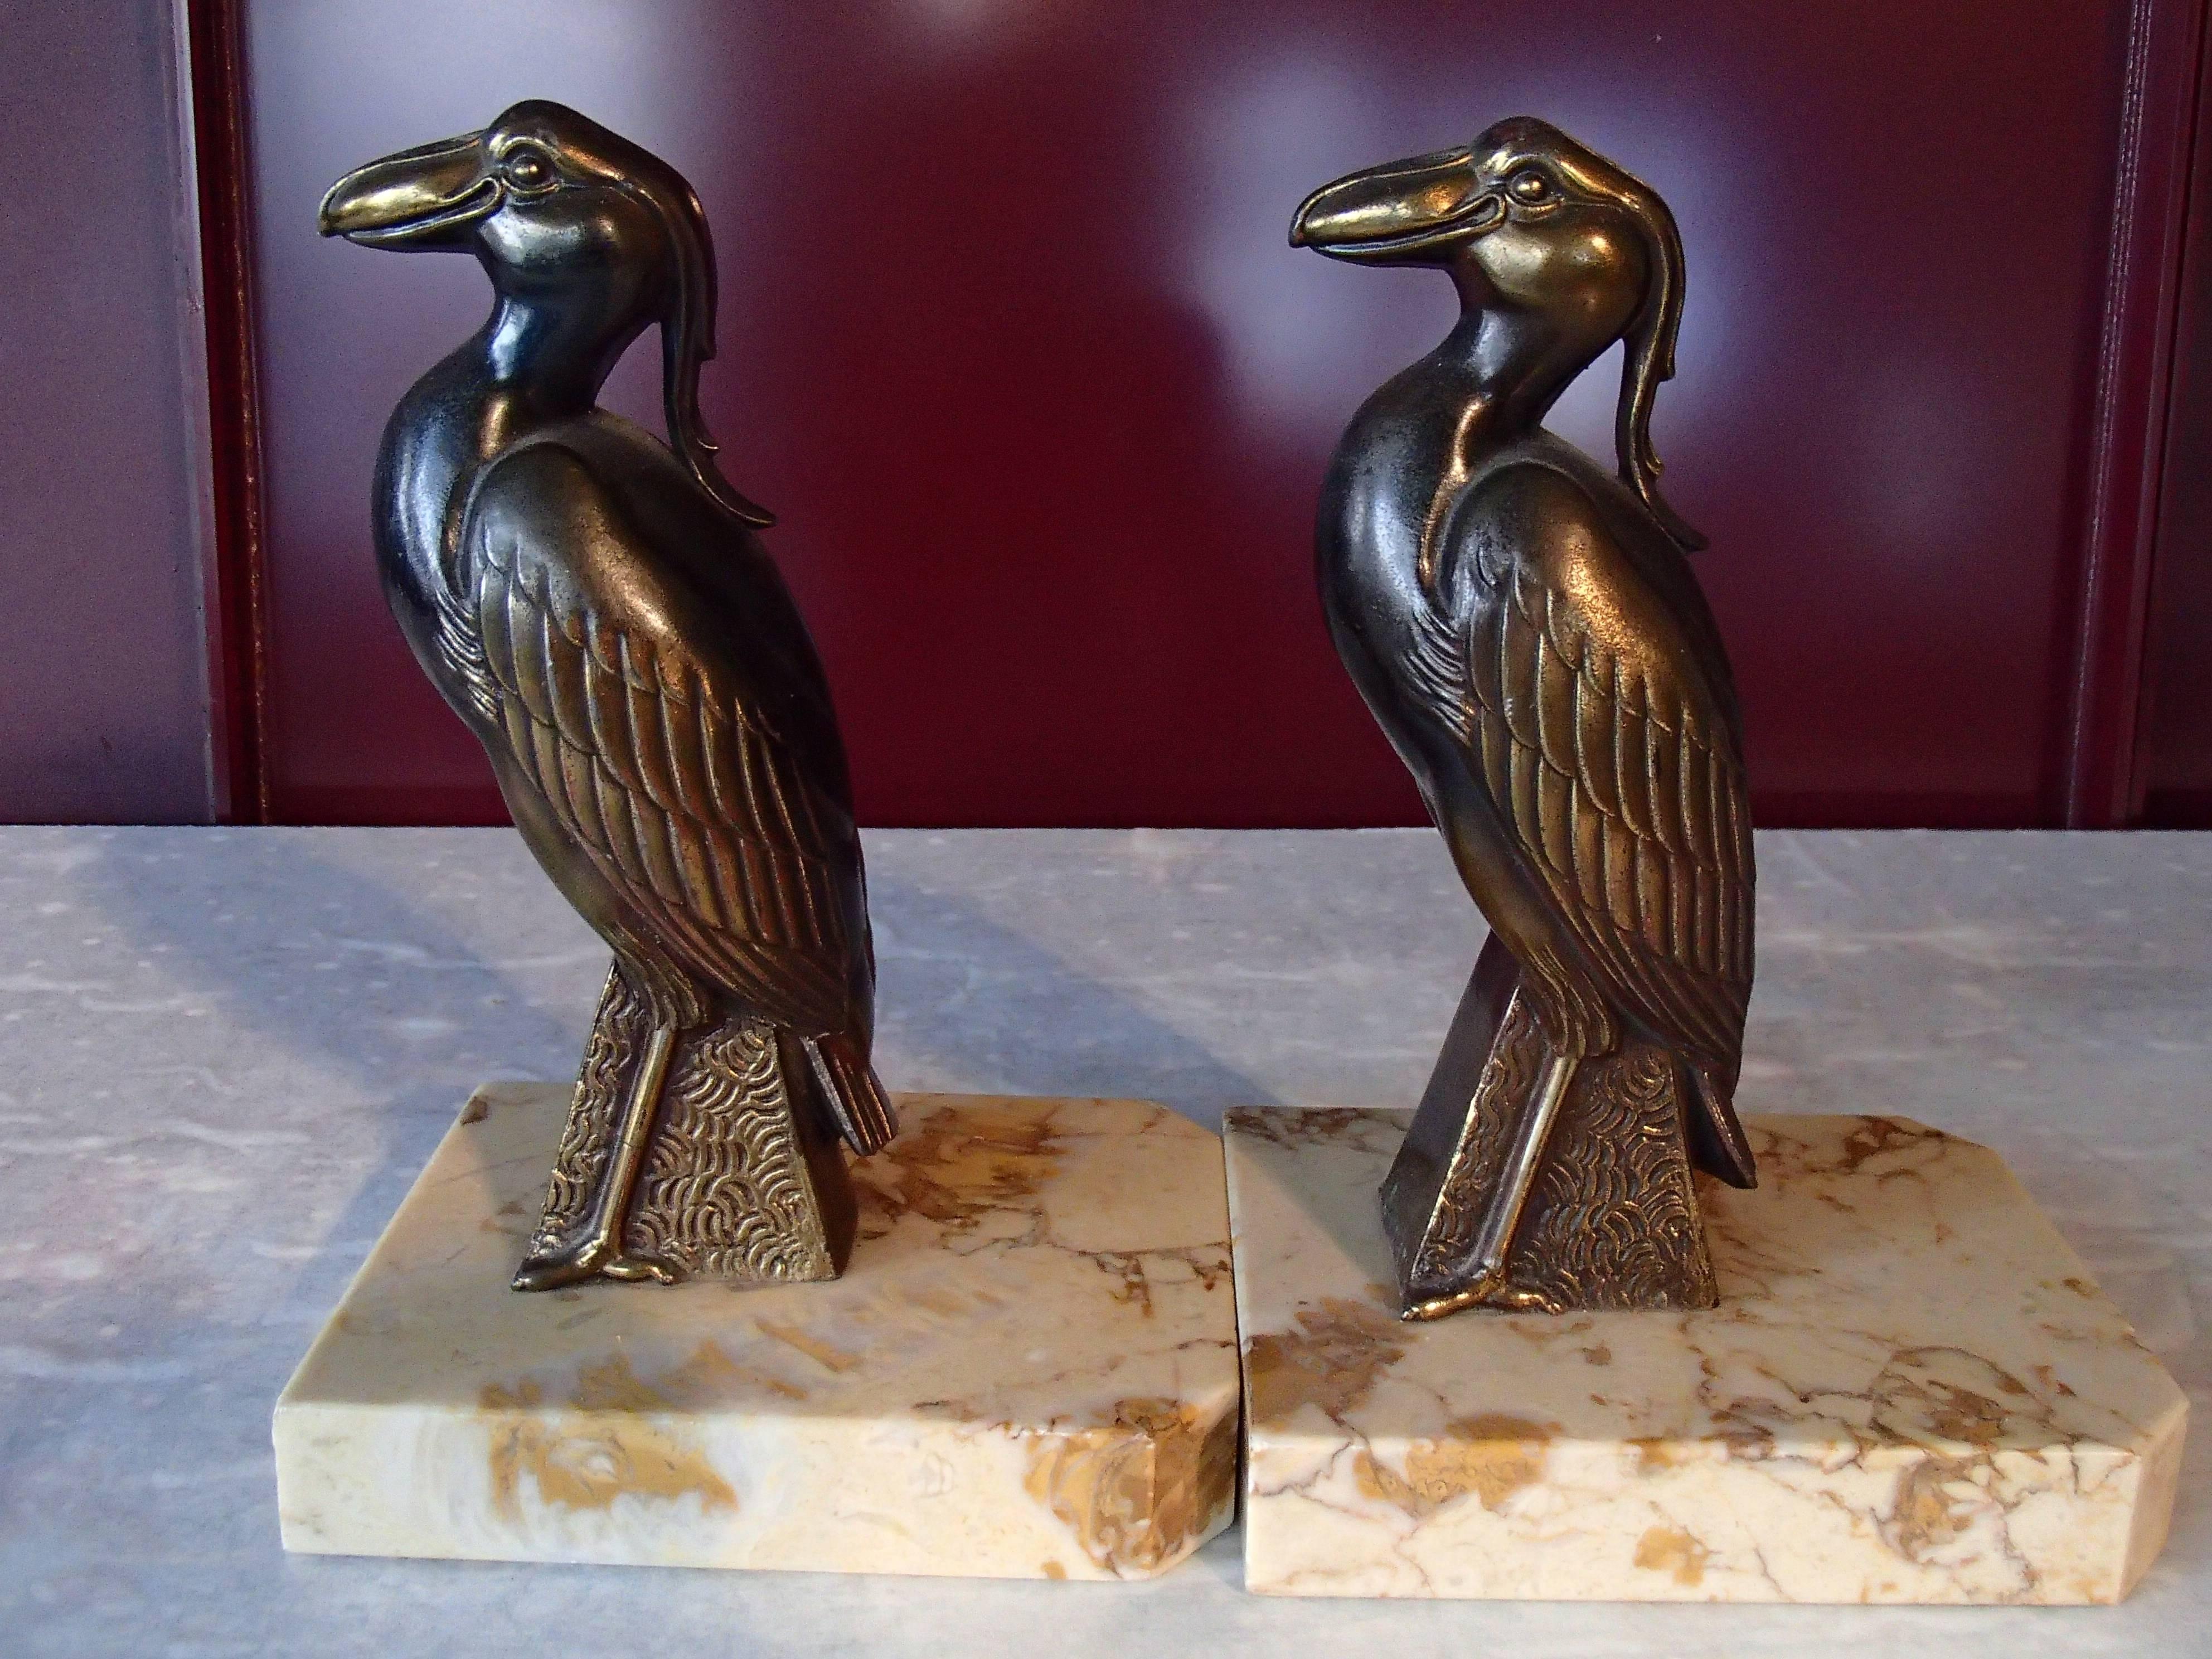 Schönes Paar von Bronze Buchstützen auf Marmor von der berühmten Französisch Bildhauer meist Tiere gemacht.